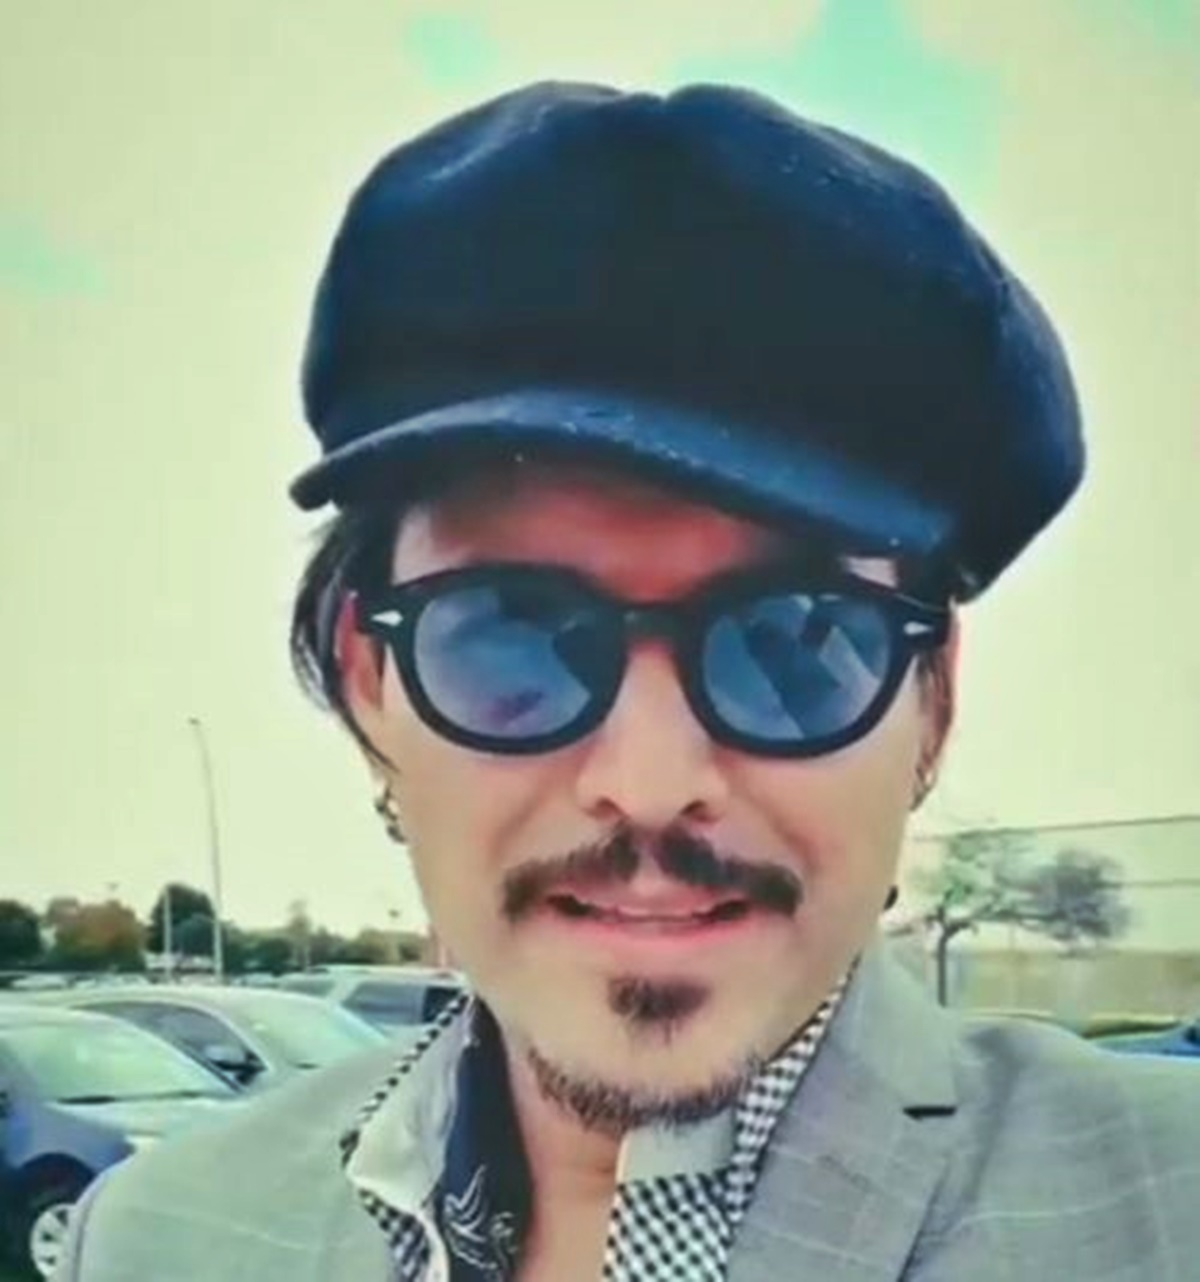 Johnny Depp 48 éves hasonmásán ámulunk: a mexikói férfi a színész tökéletes mása